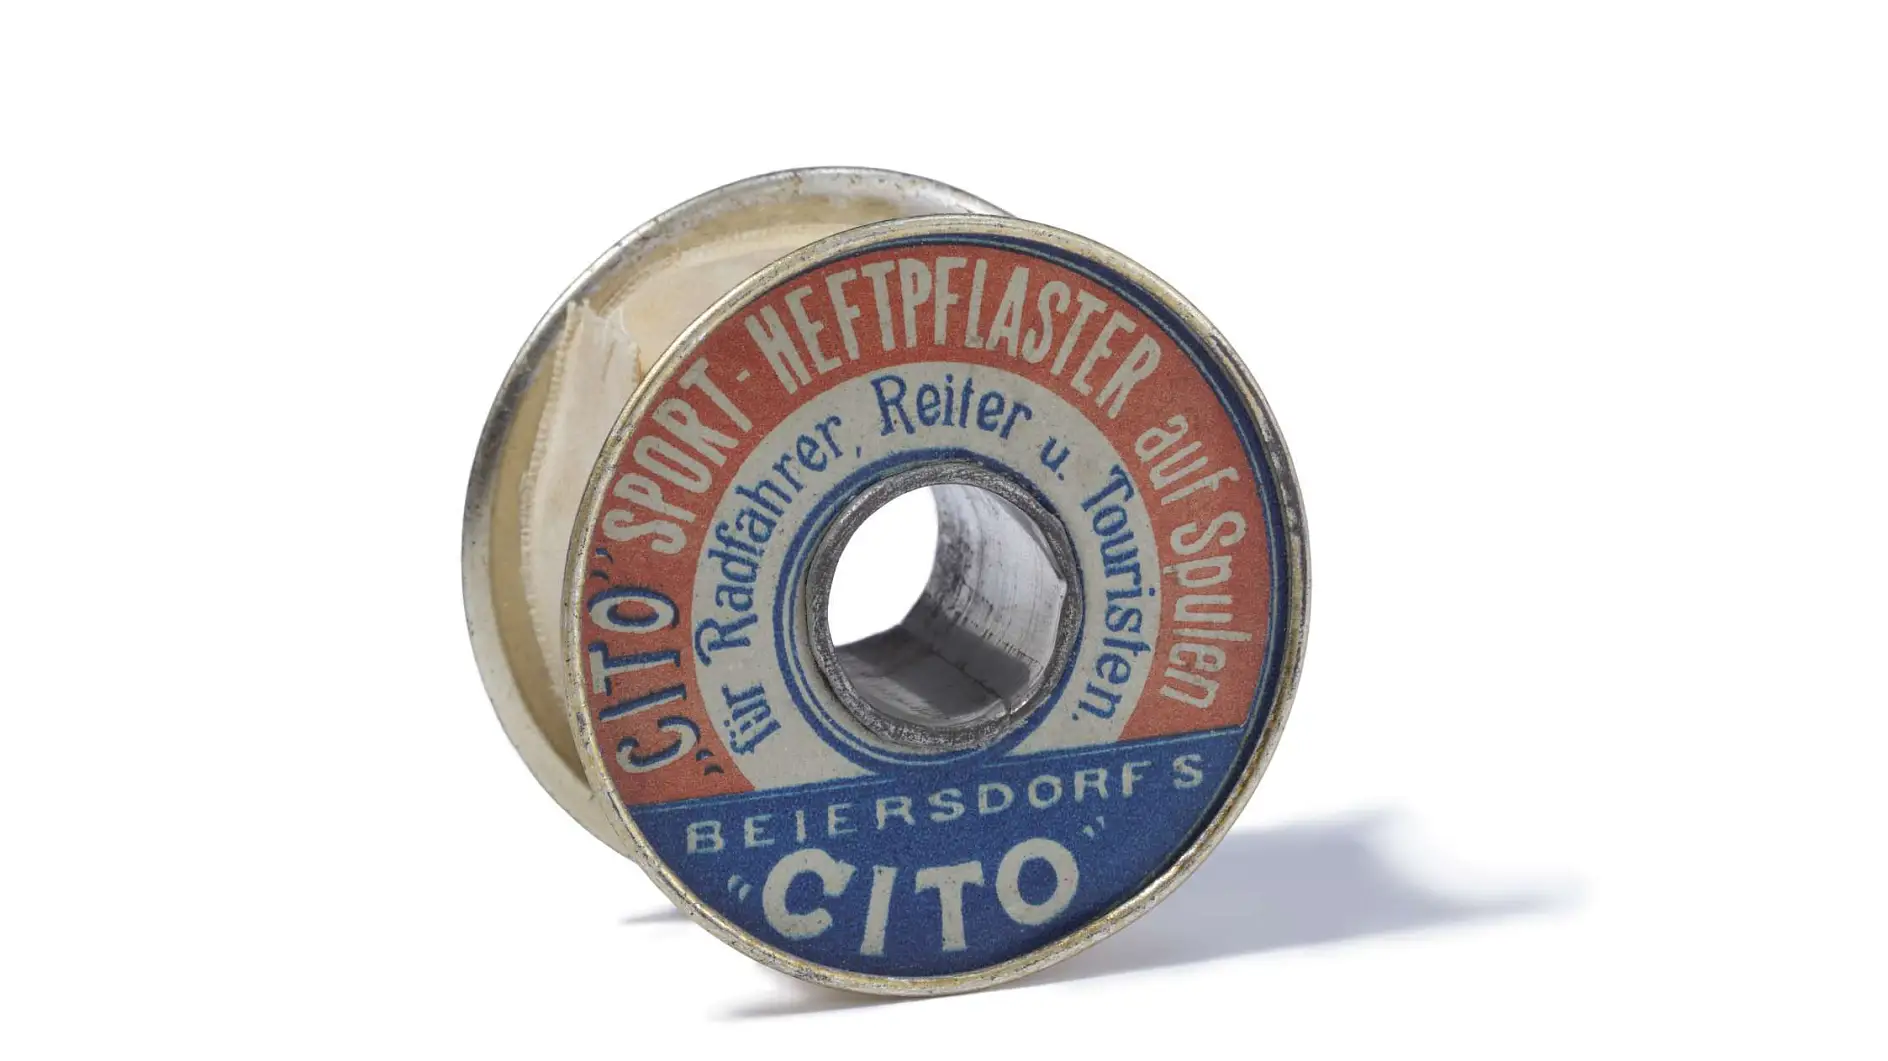 A Cito sport ragasztószalag 1896-ban a világ első műszaki ragasztószalagja volt.